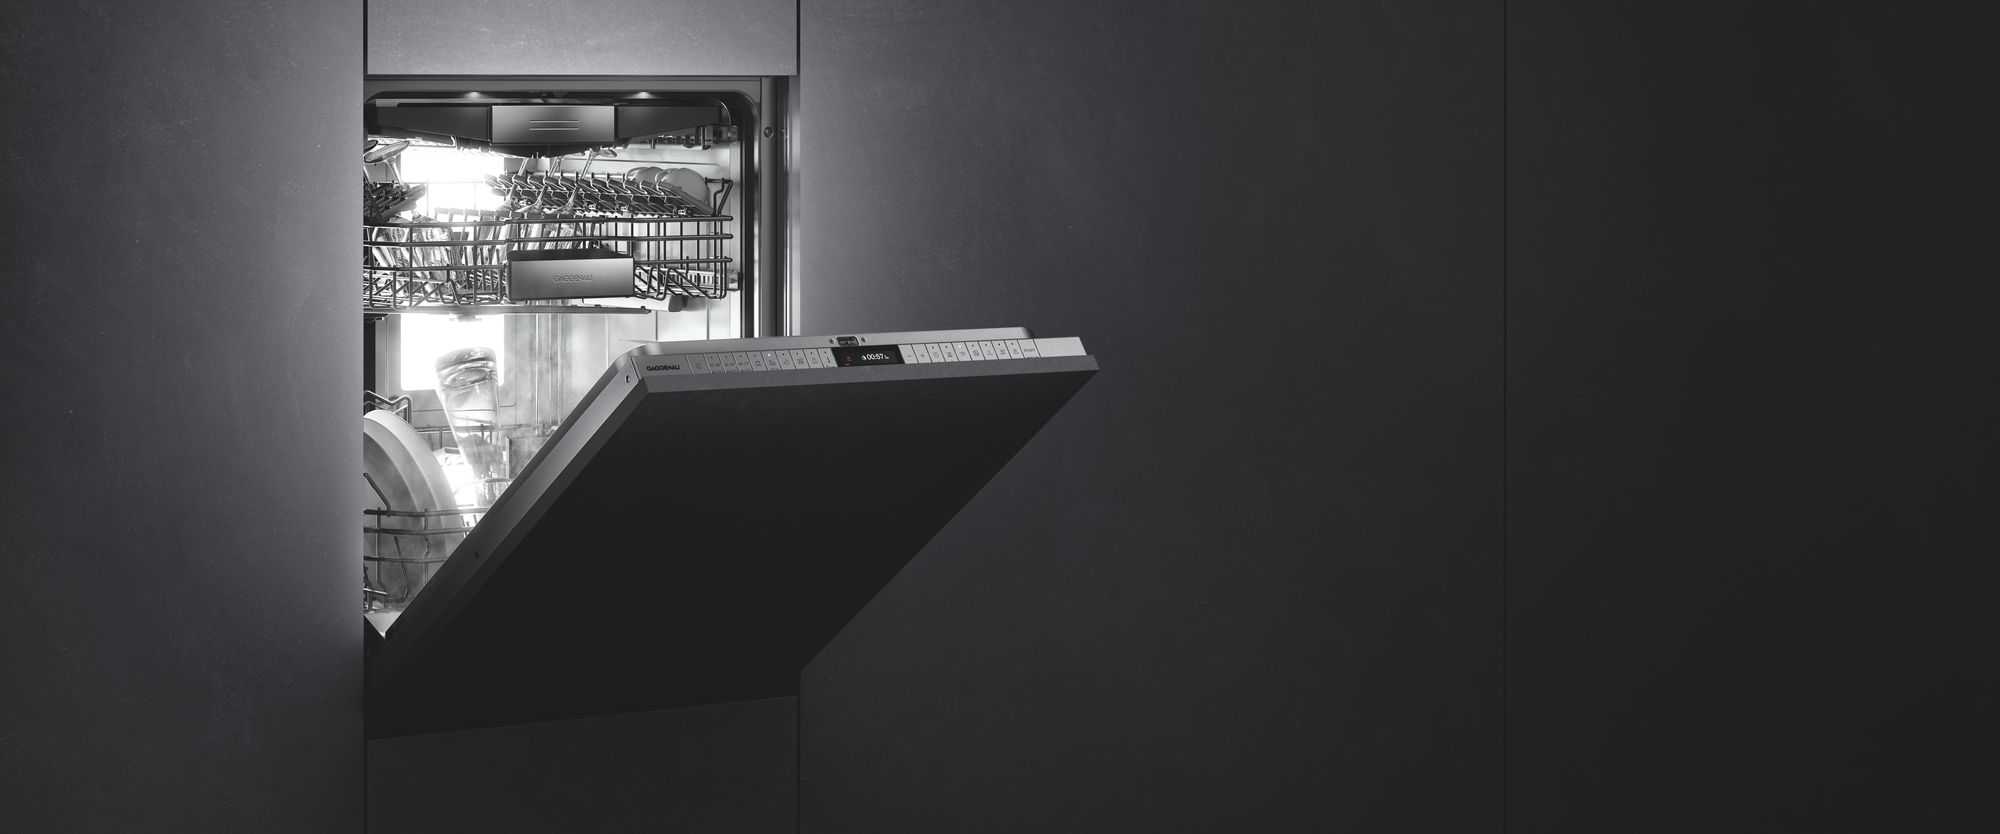 Gaggenau Dishwashers 400 Series by FCI London